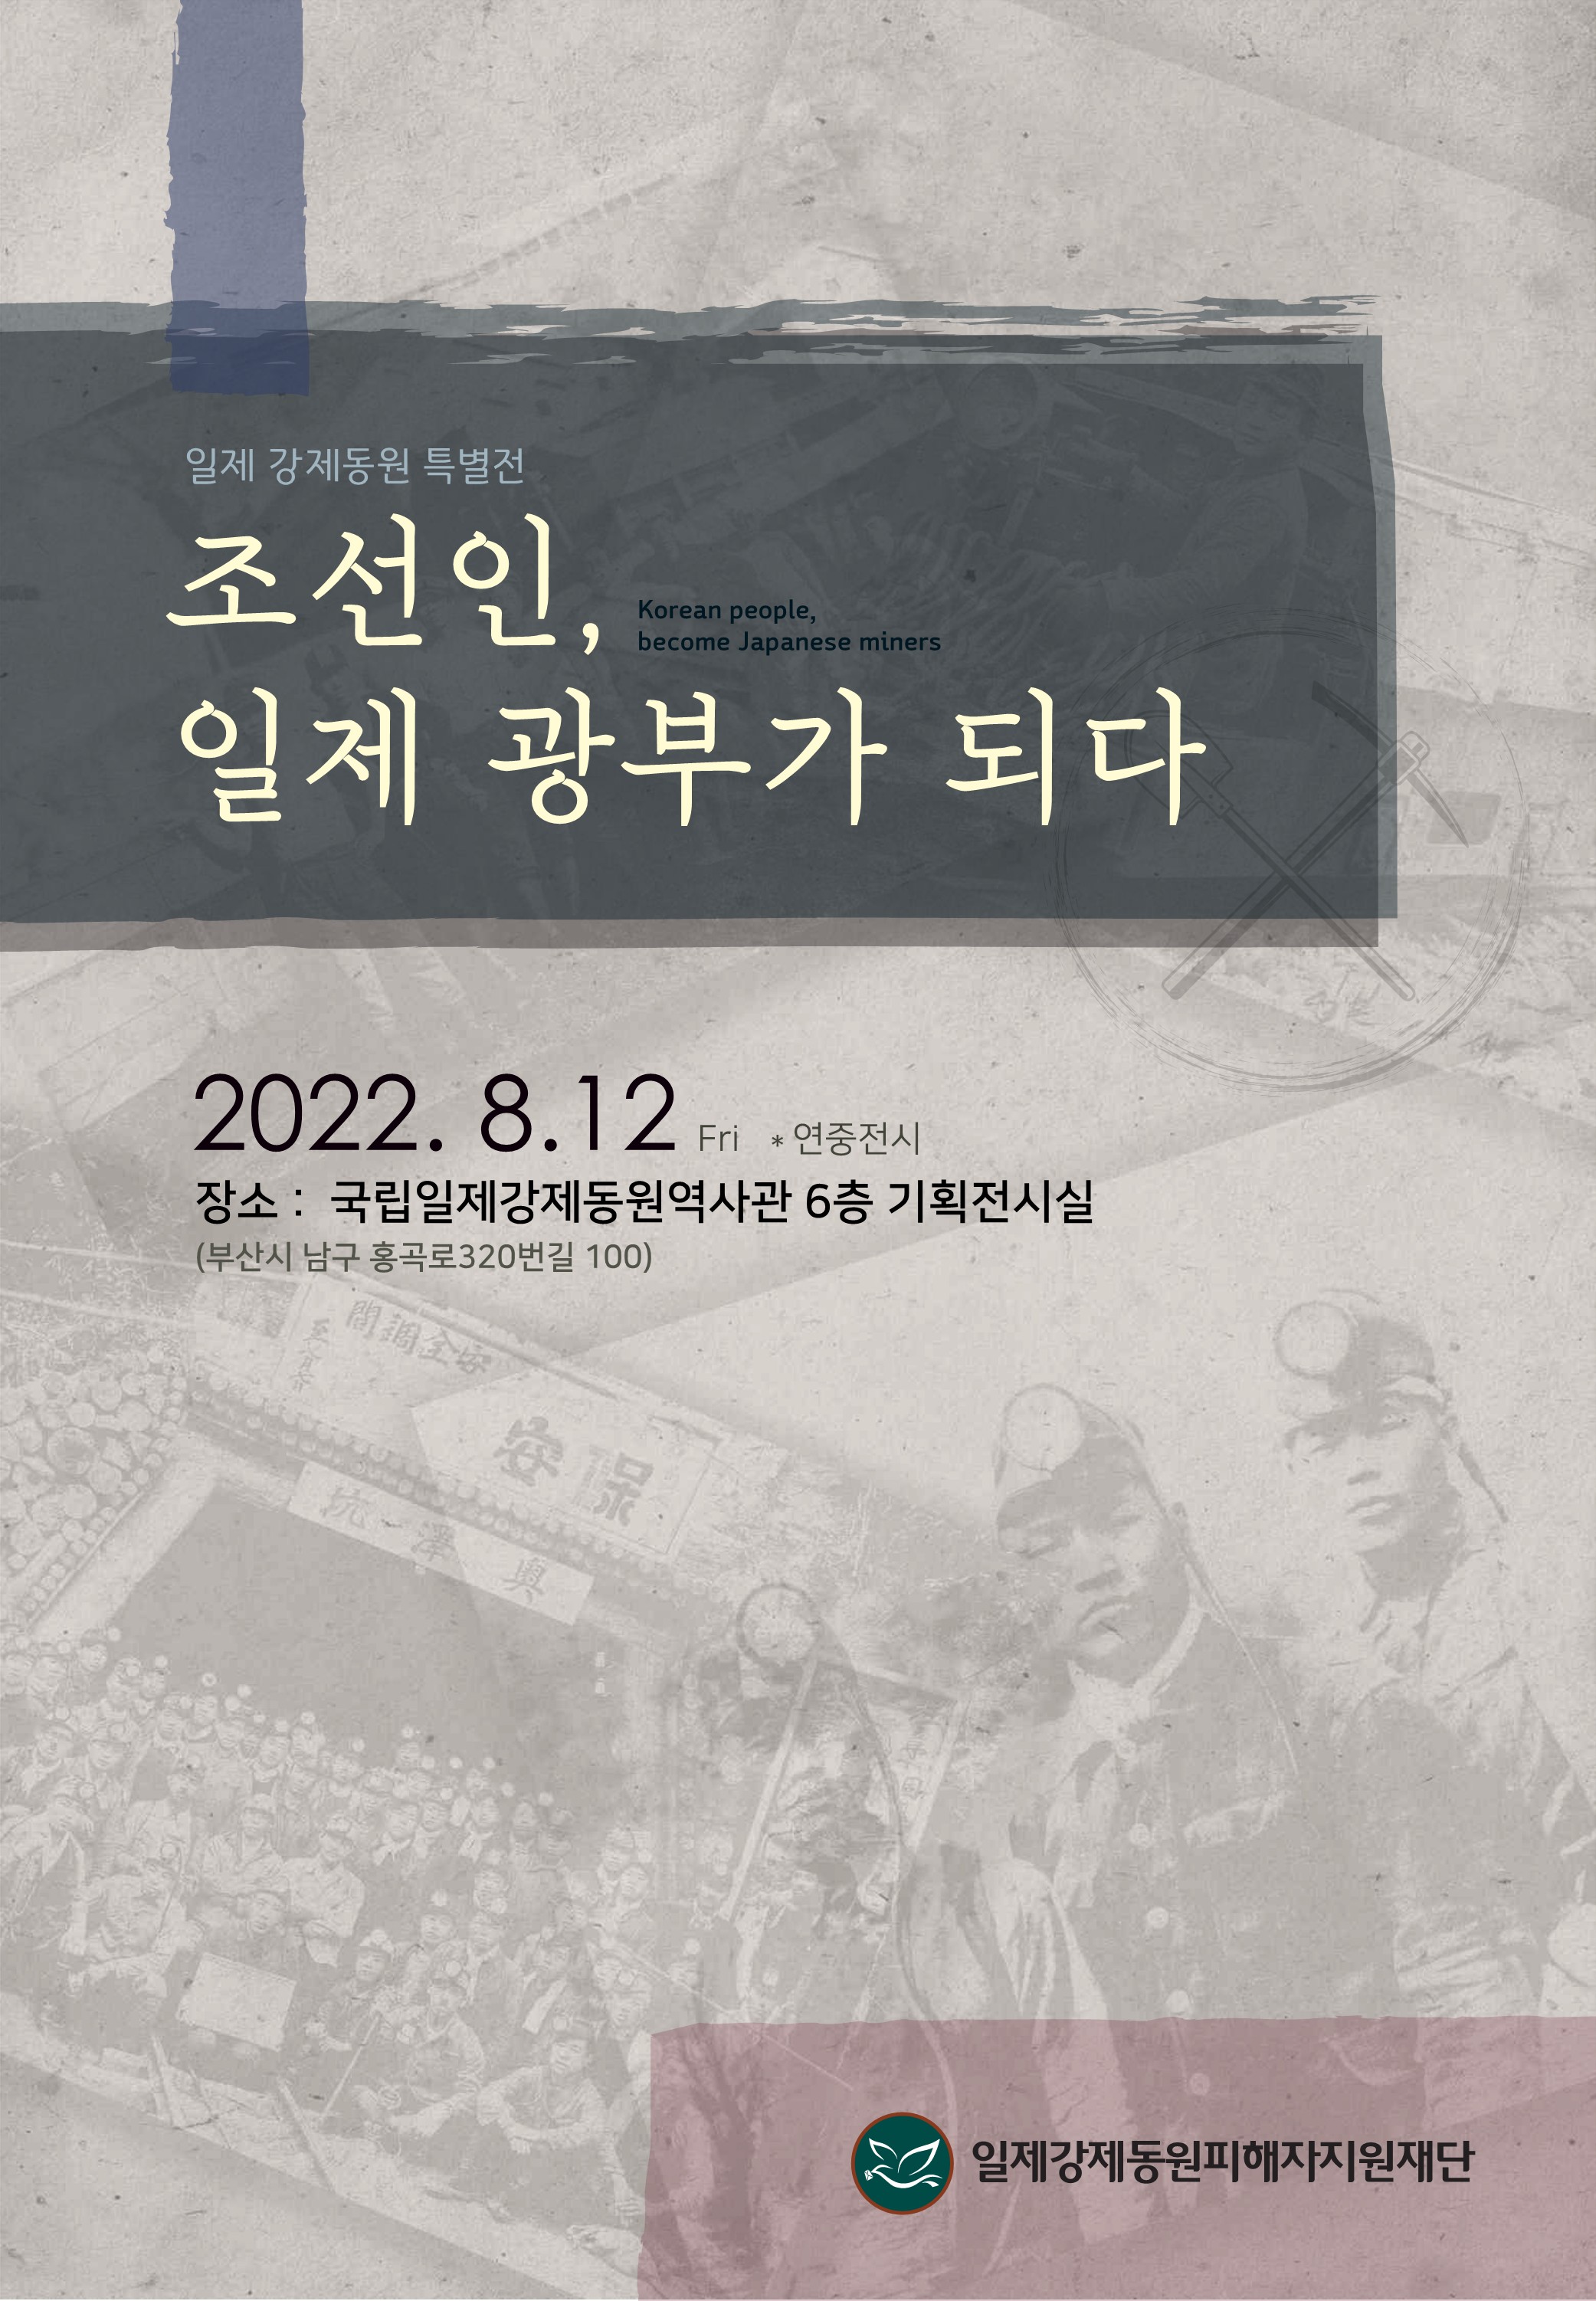 일제강제동원 특별전 「조선인, 광부가 되다」 홍보 포스터